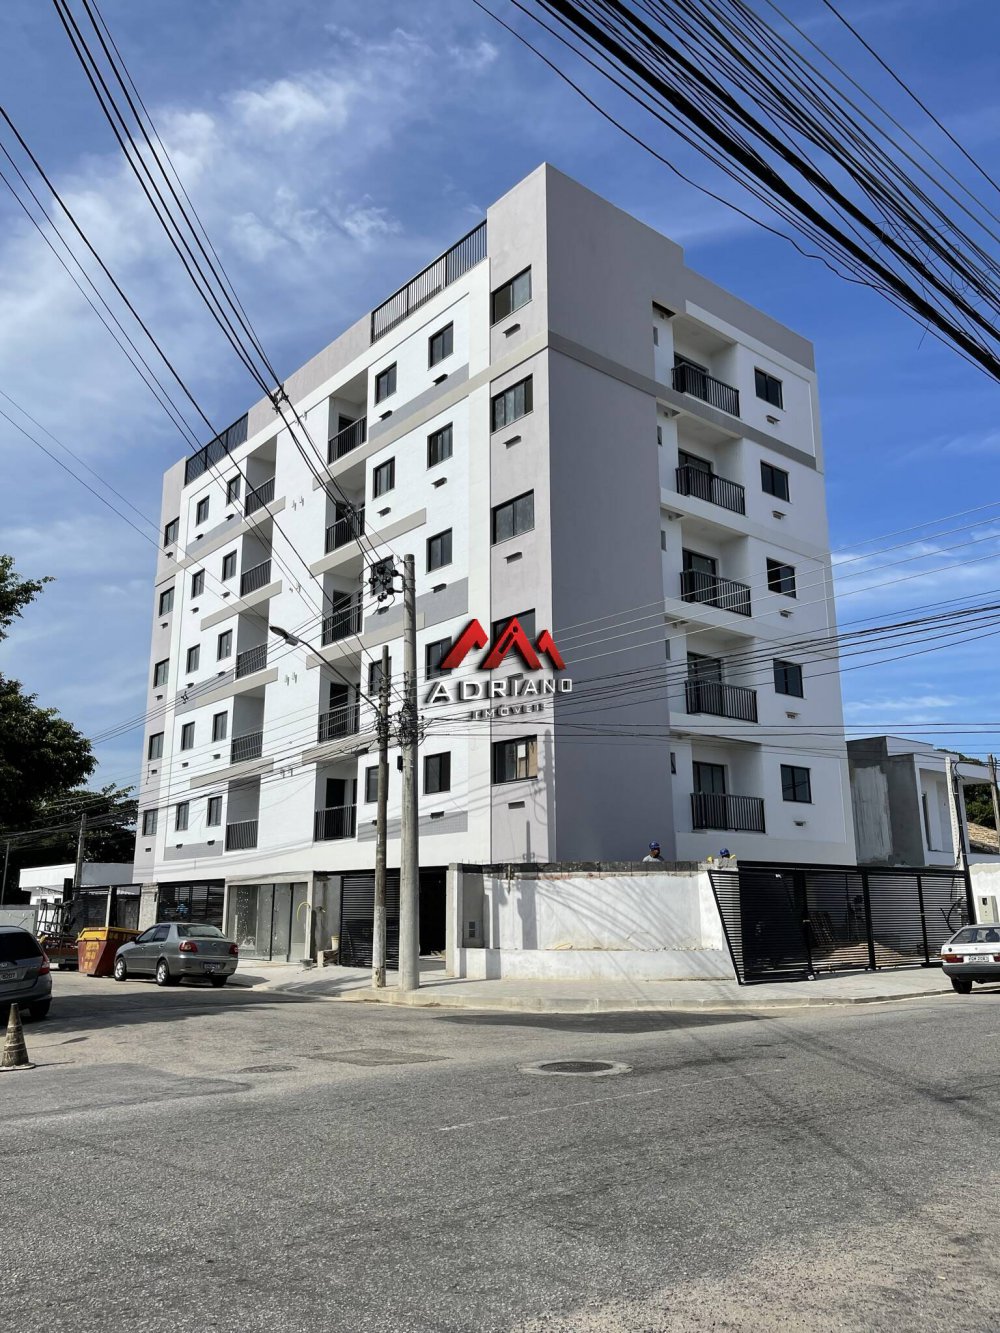 Apartamento - Venda - Pqe. Ips - Campos dos Goytacazes - RJ